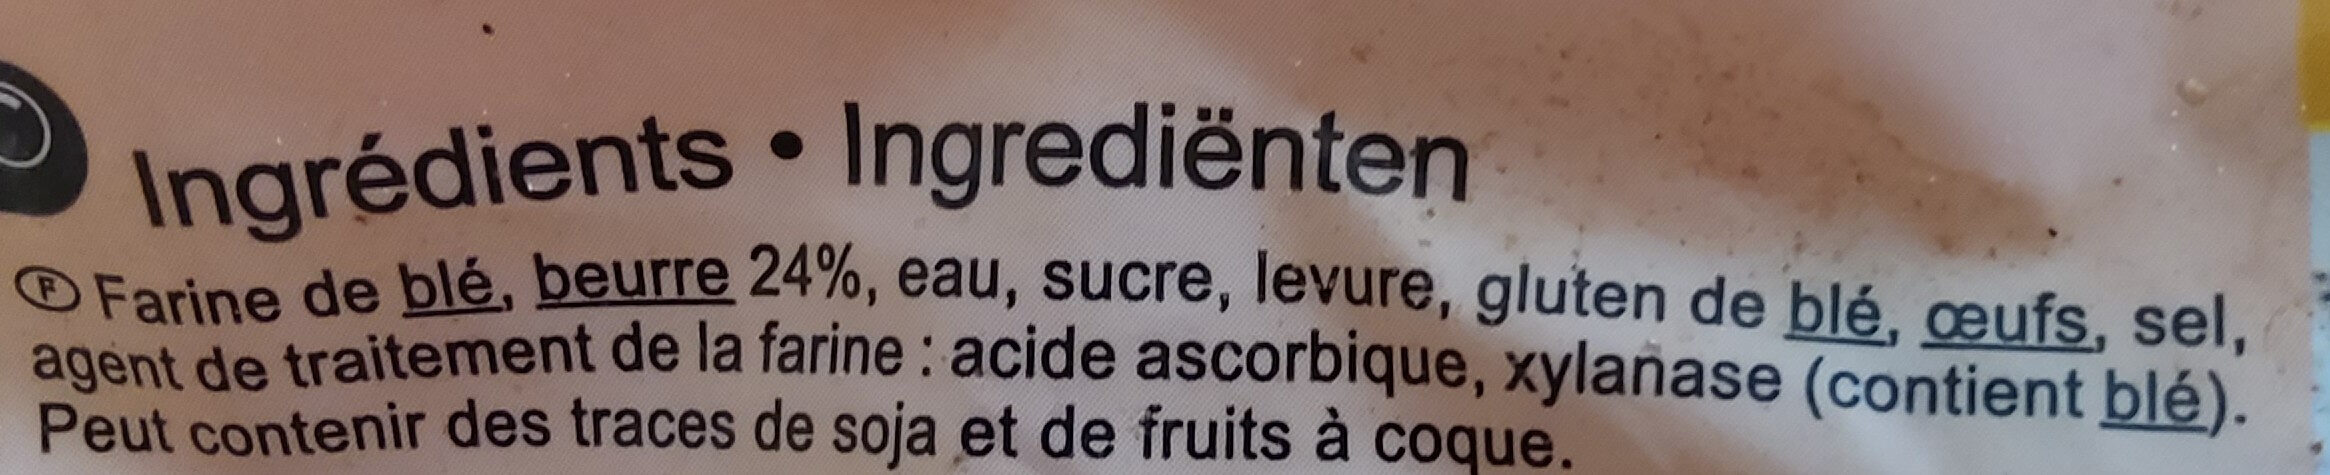 6 croissants - Zutaten - fr